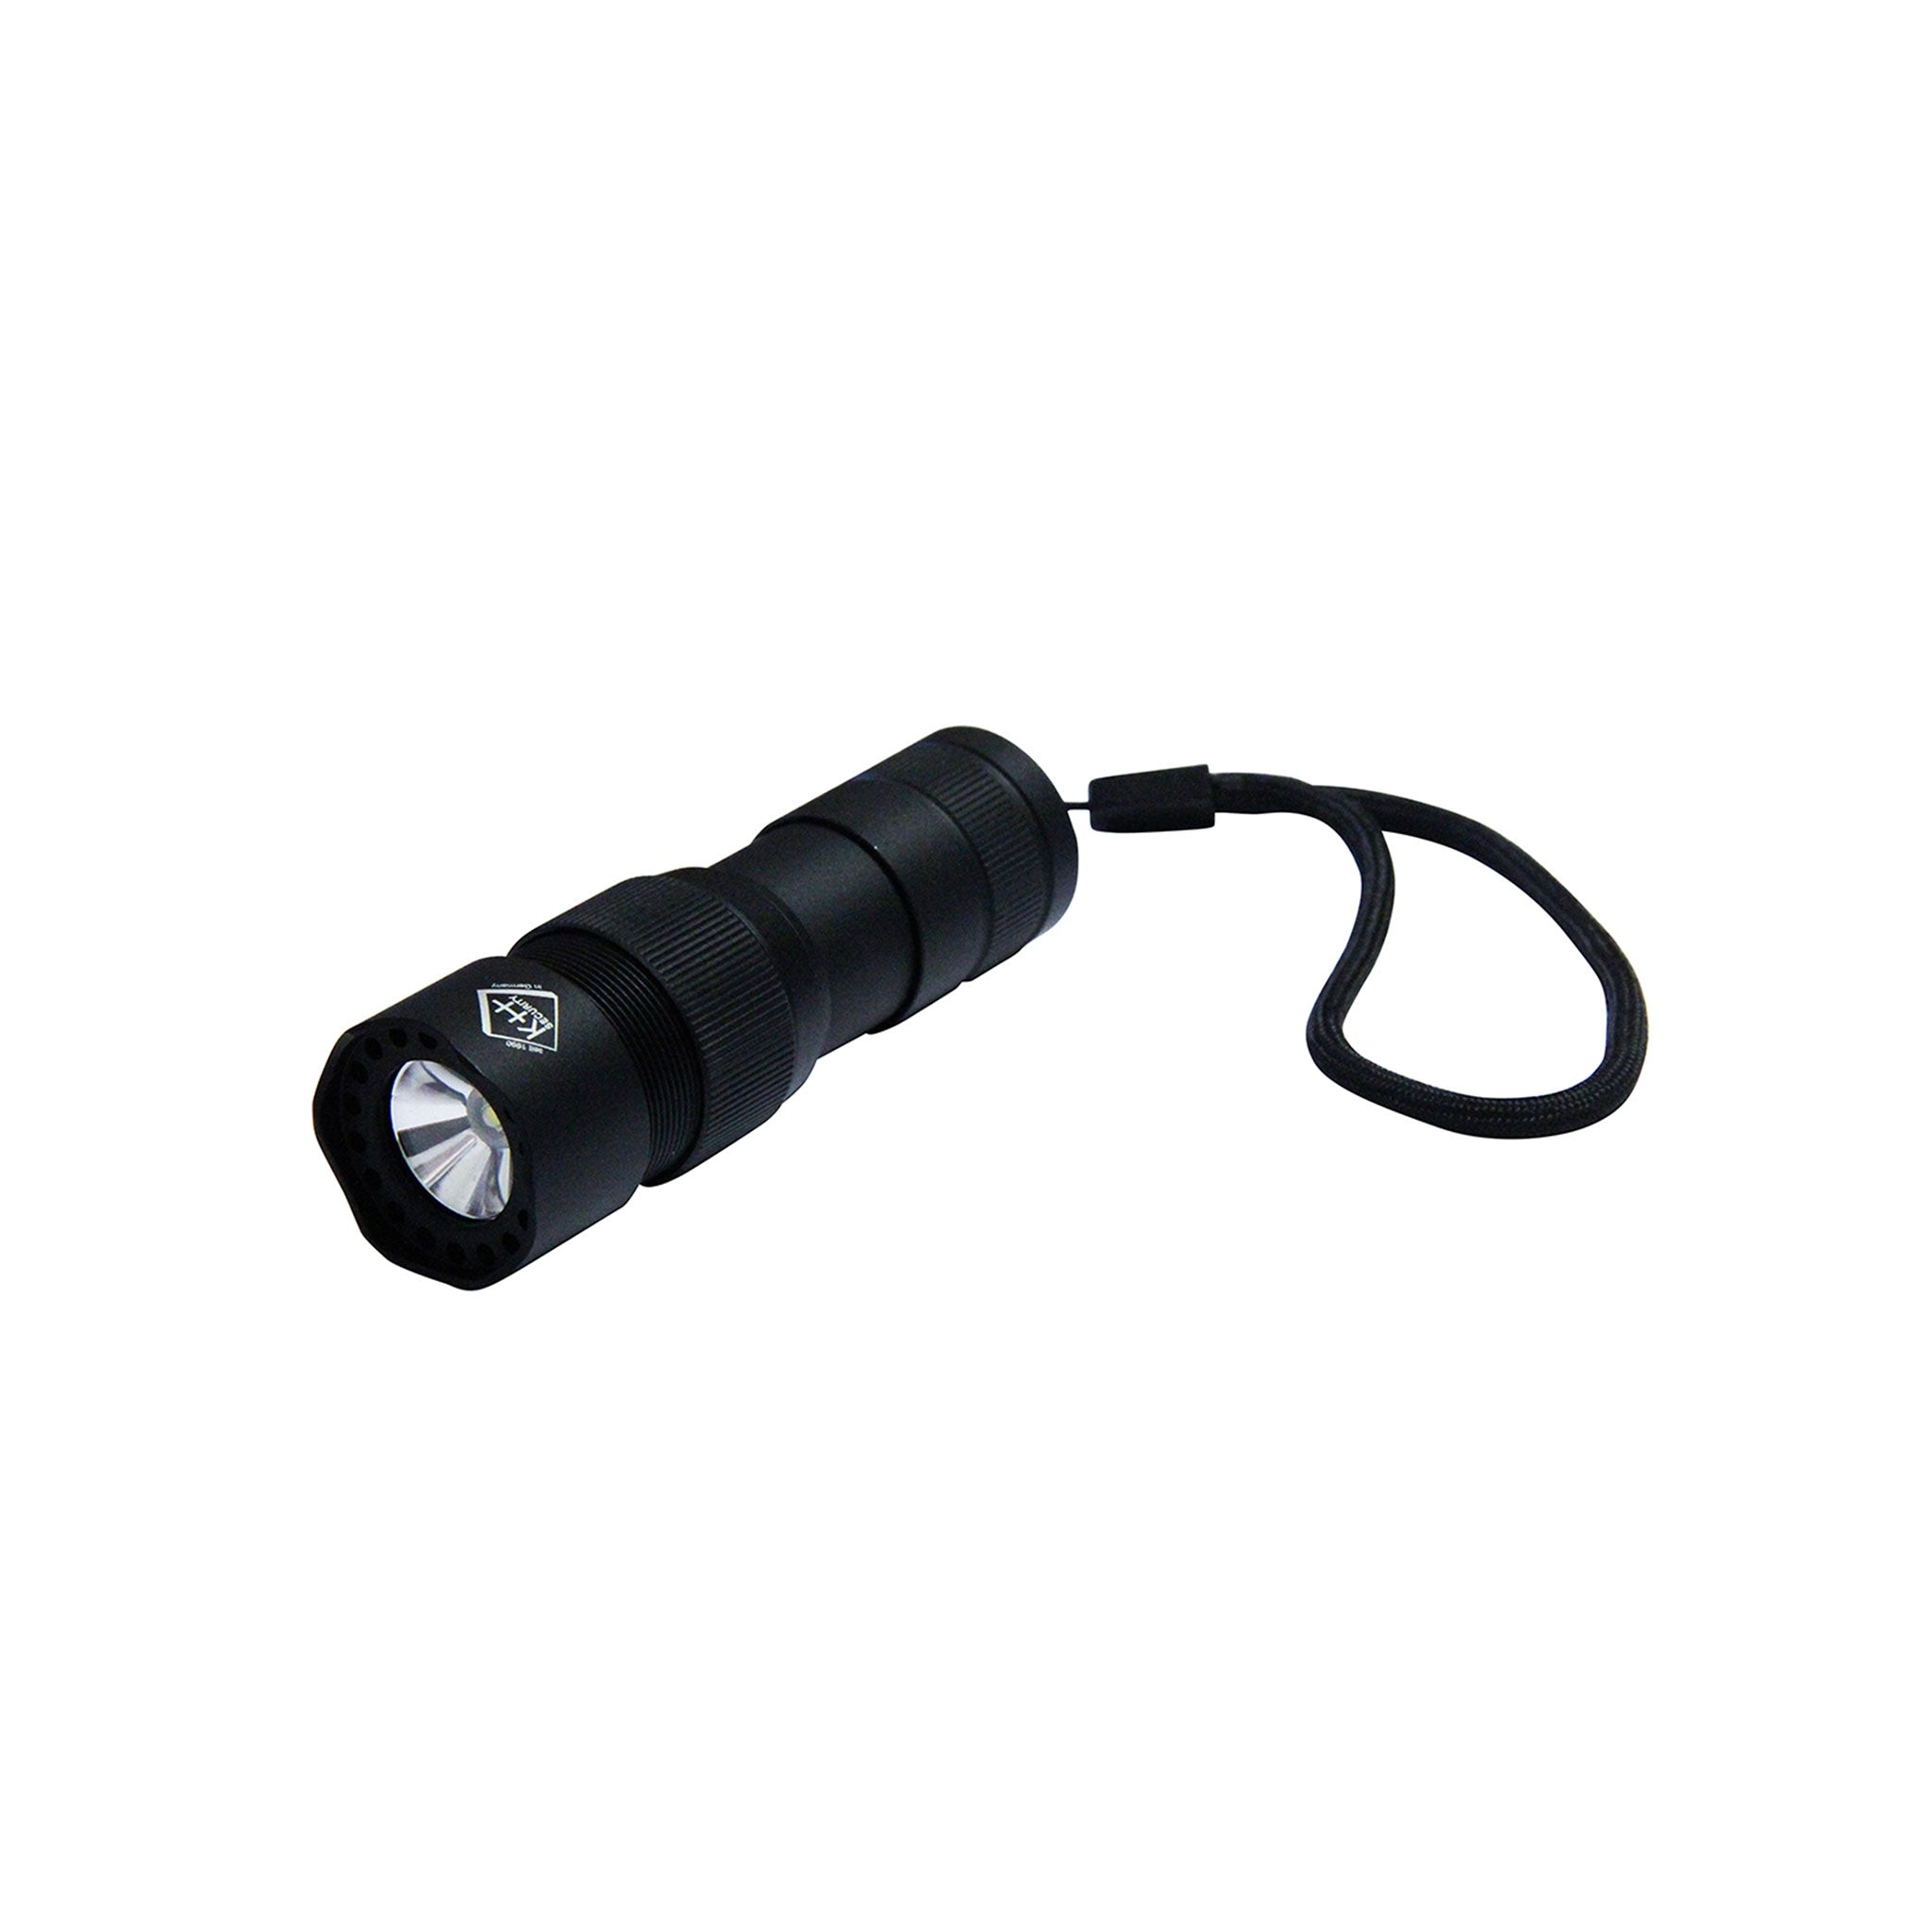 Taschenlampe-2in1-Pro-Alarm.jpg